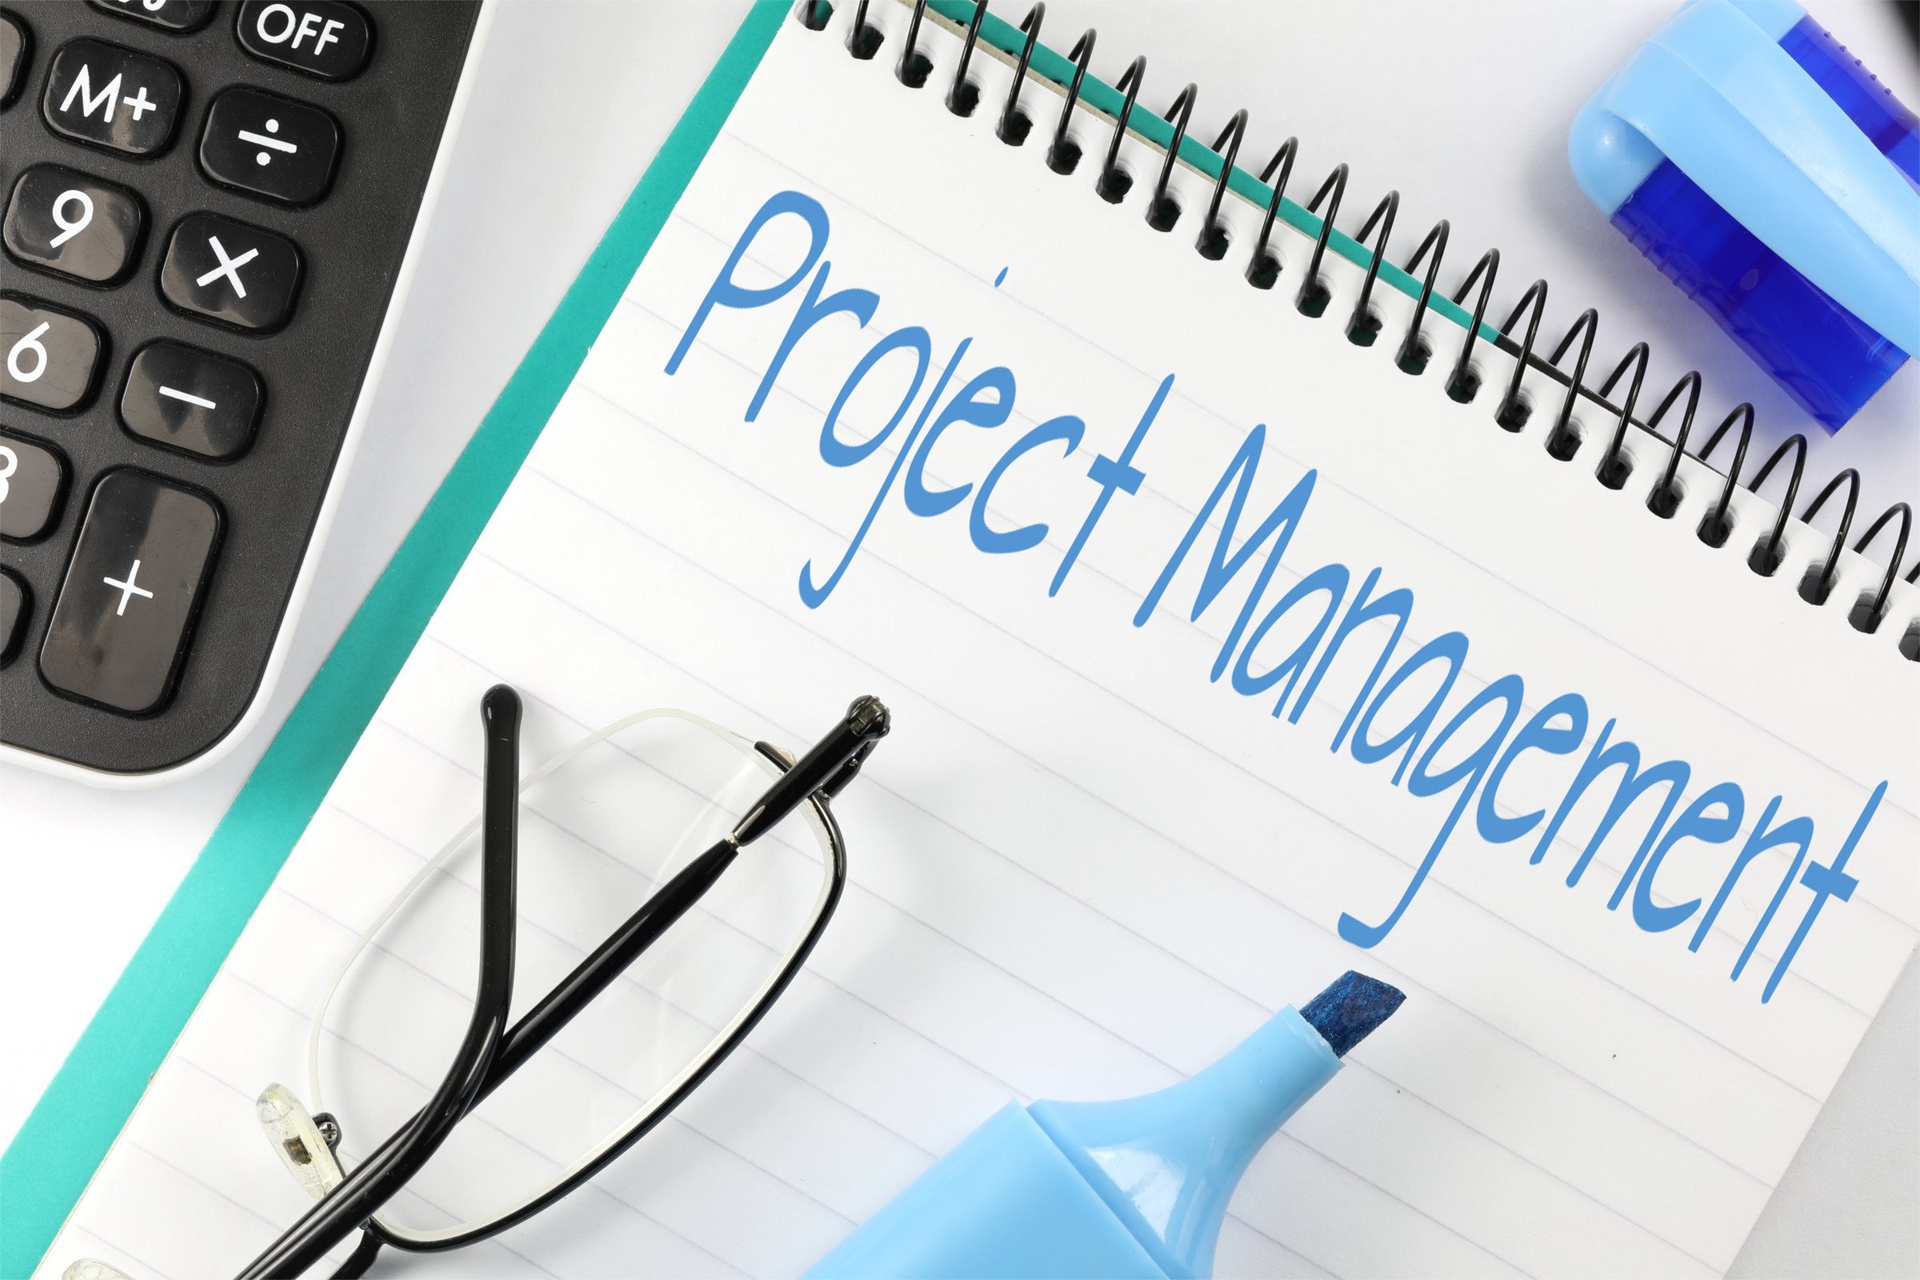 Projektmanagement - Ausbildung Projektmanager/-leiter